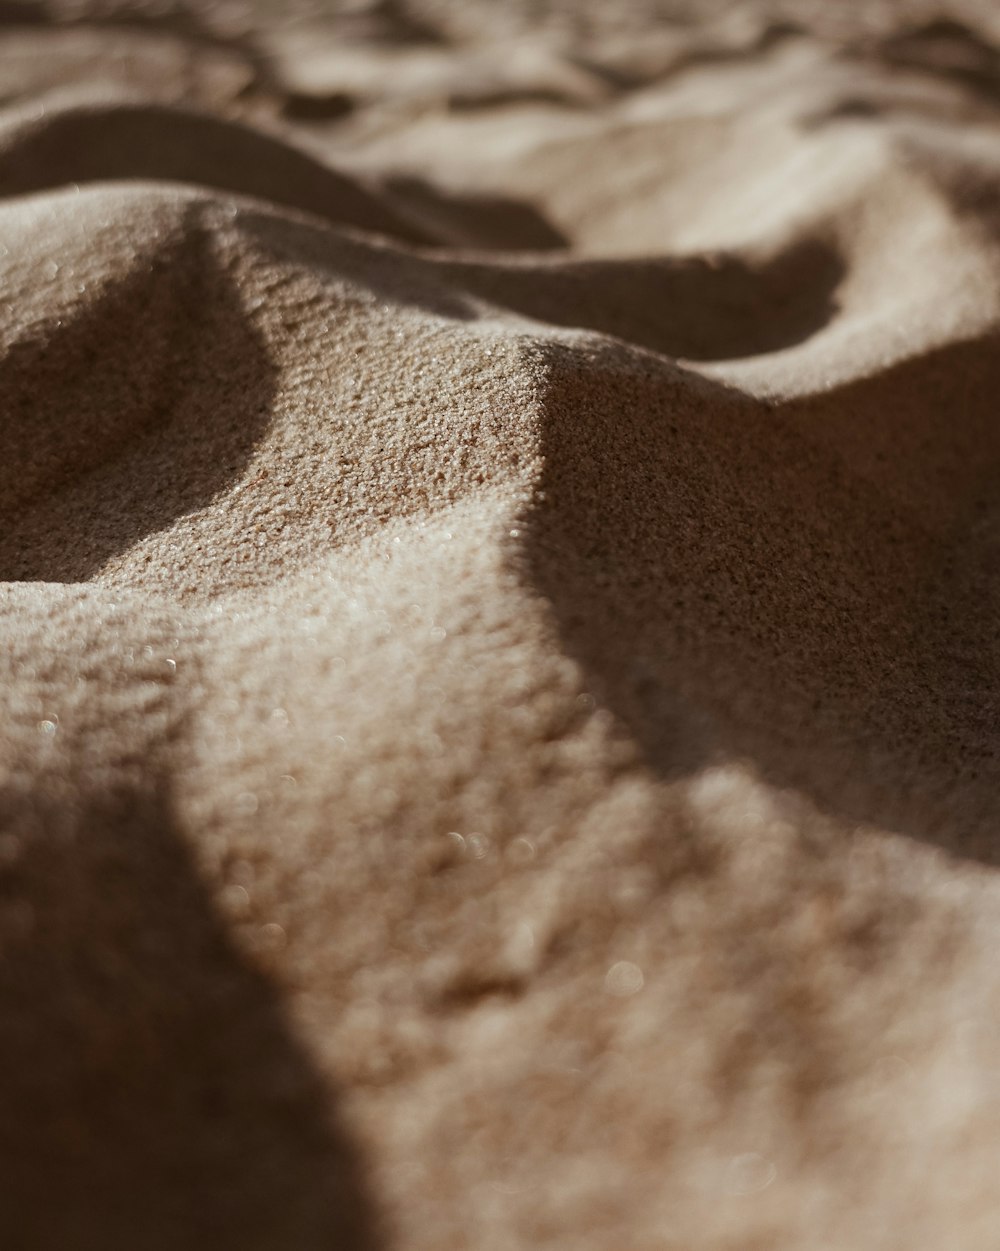 brown sand